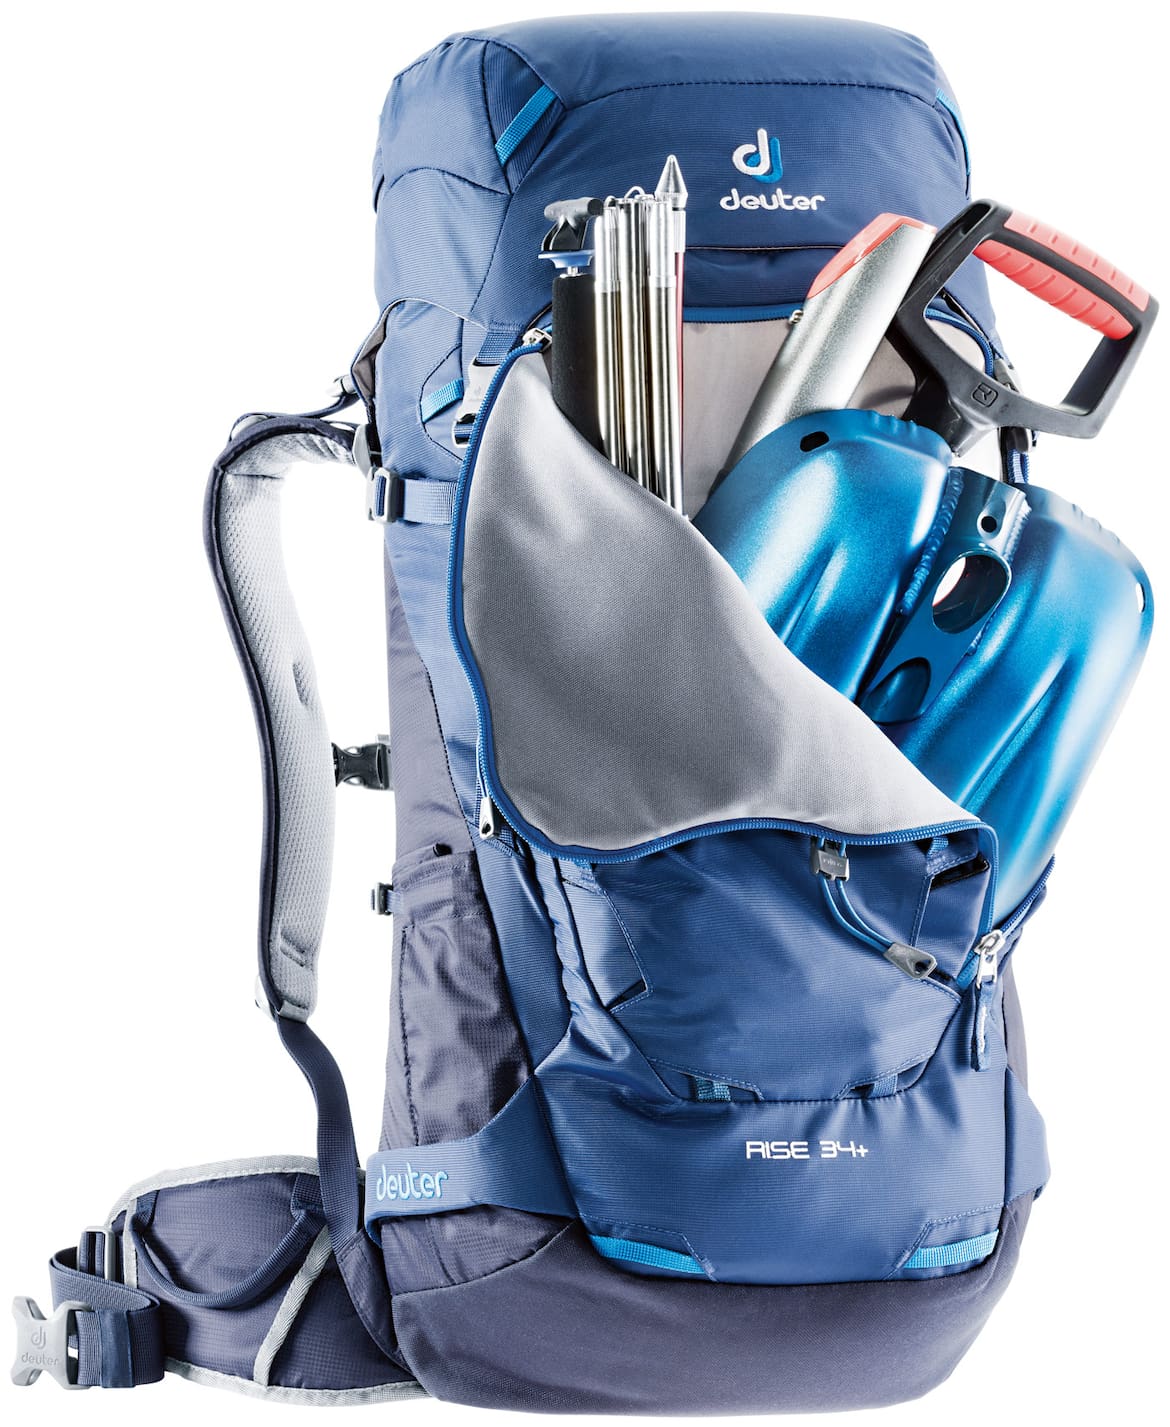 Deuter Rise 34+ – der optimale Skitourenrucksack mit vielen Extras.